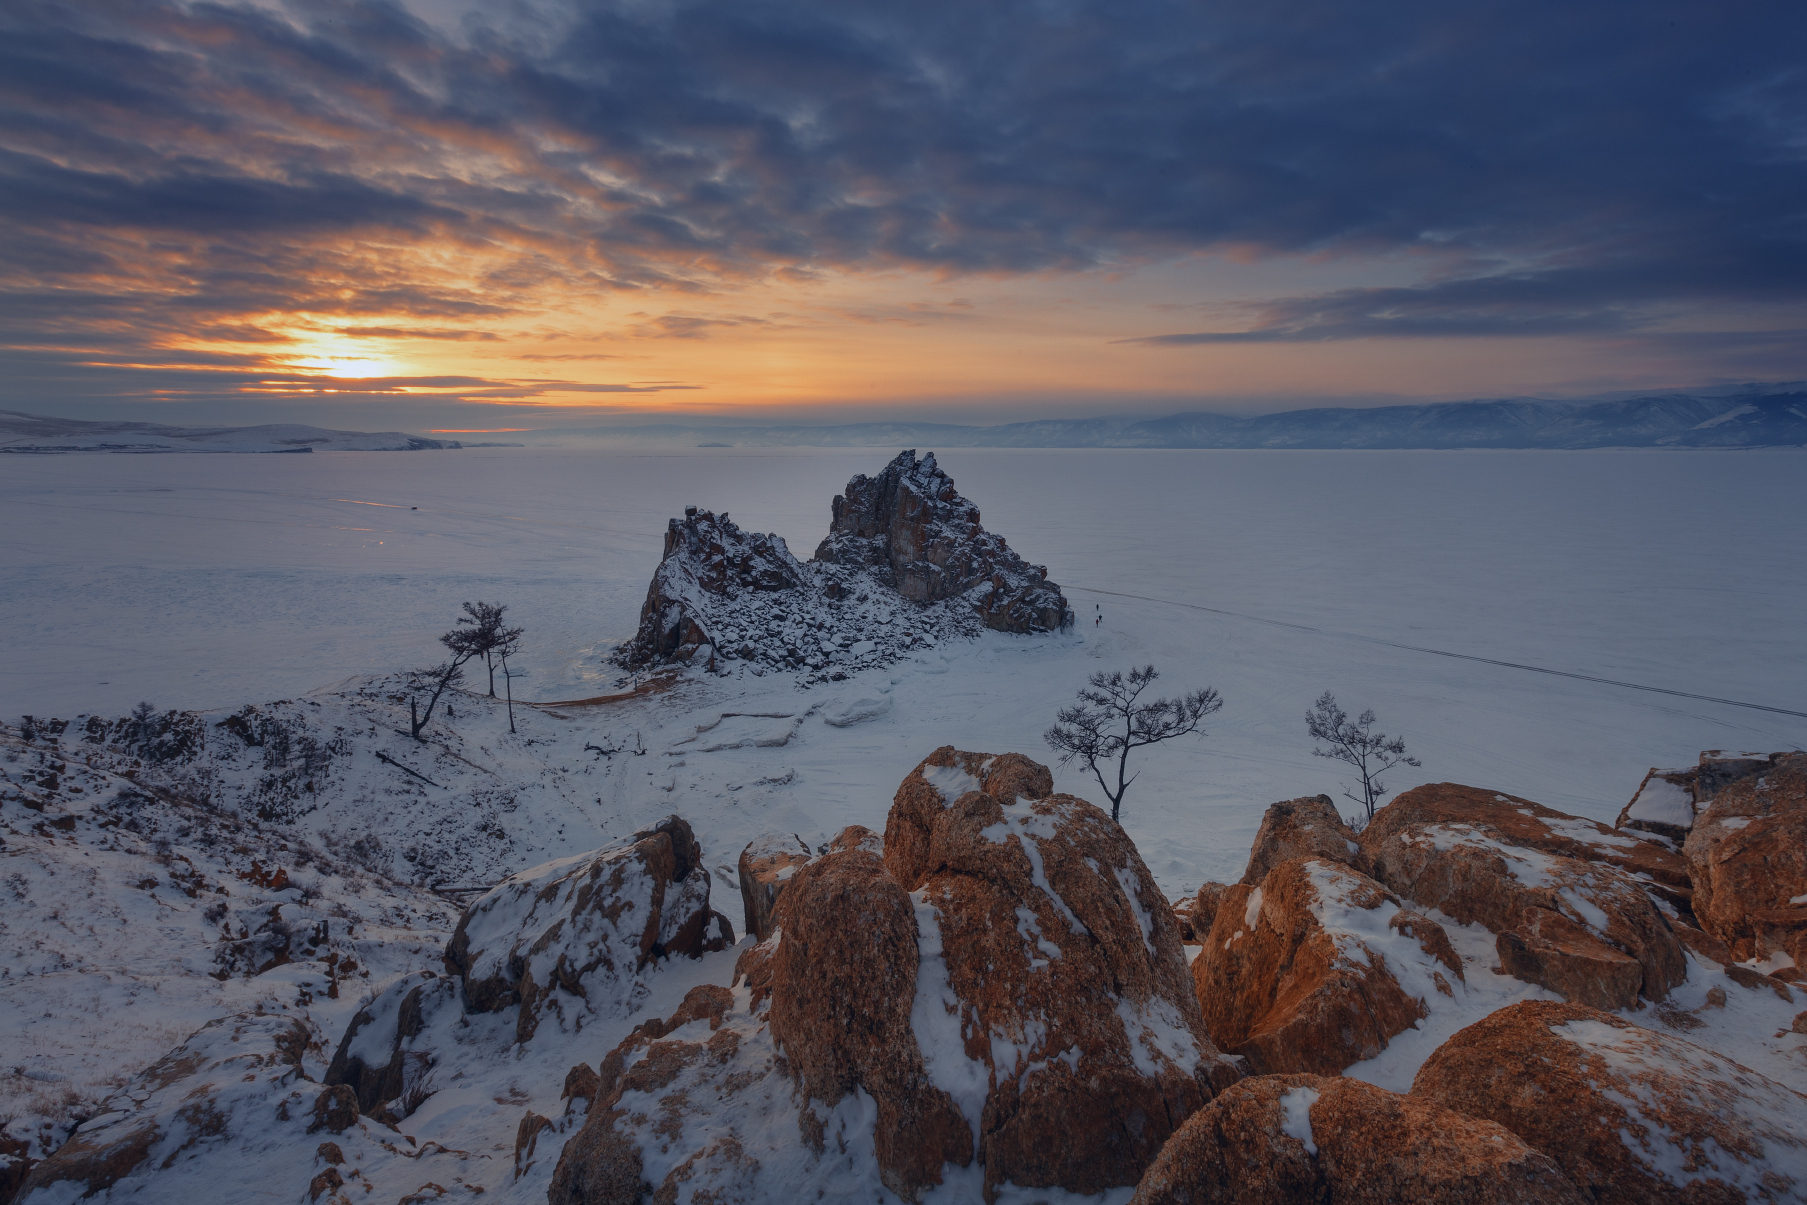 иркутская область байкал ольхон скала шаманка мыс бурхан зима закат, Шишкин Дмитрий